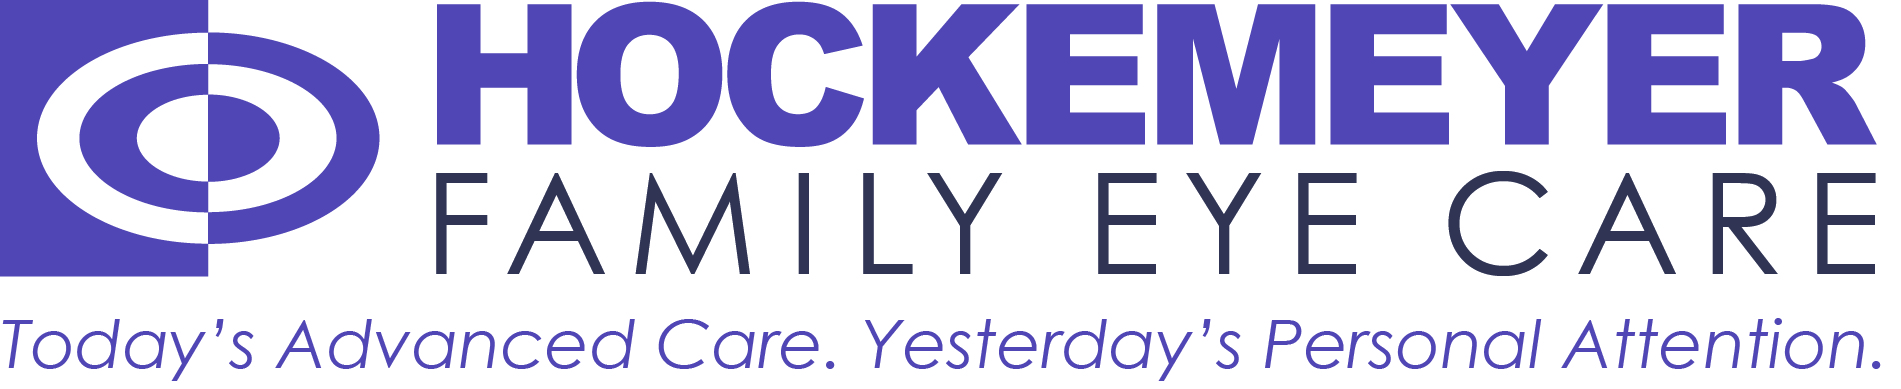 Hockemeyer Family Eye Care Logo